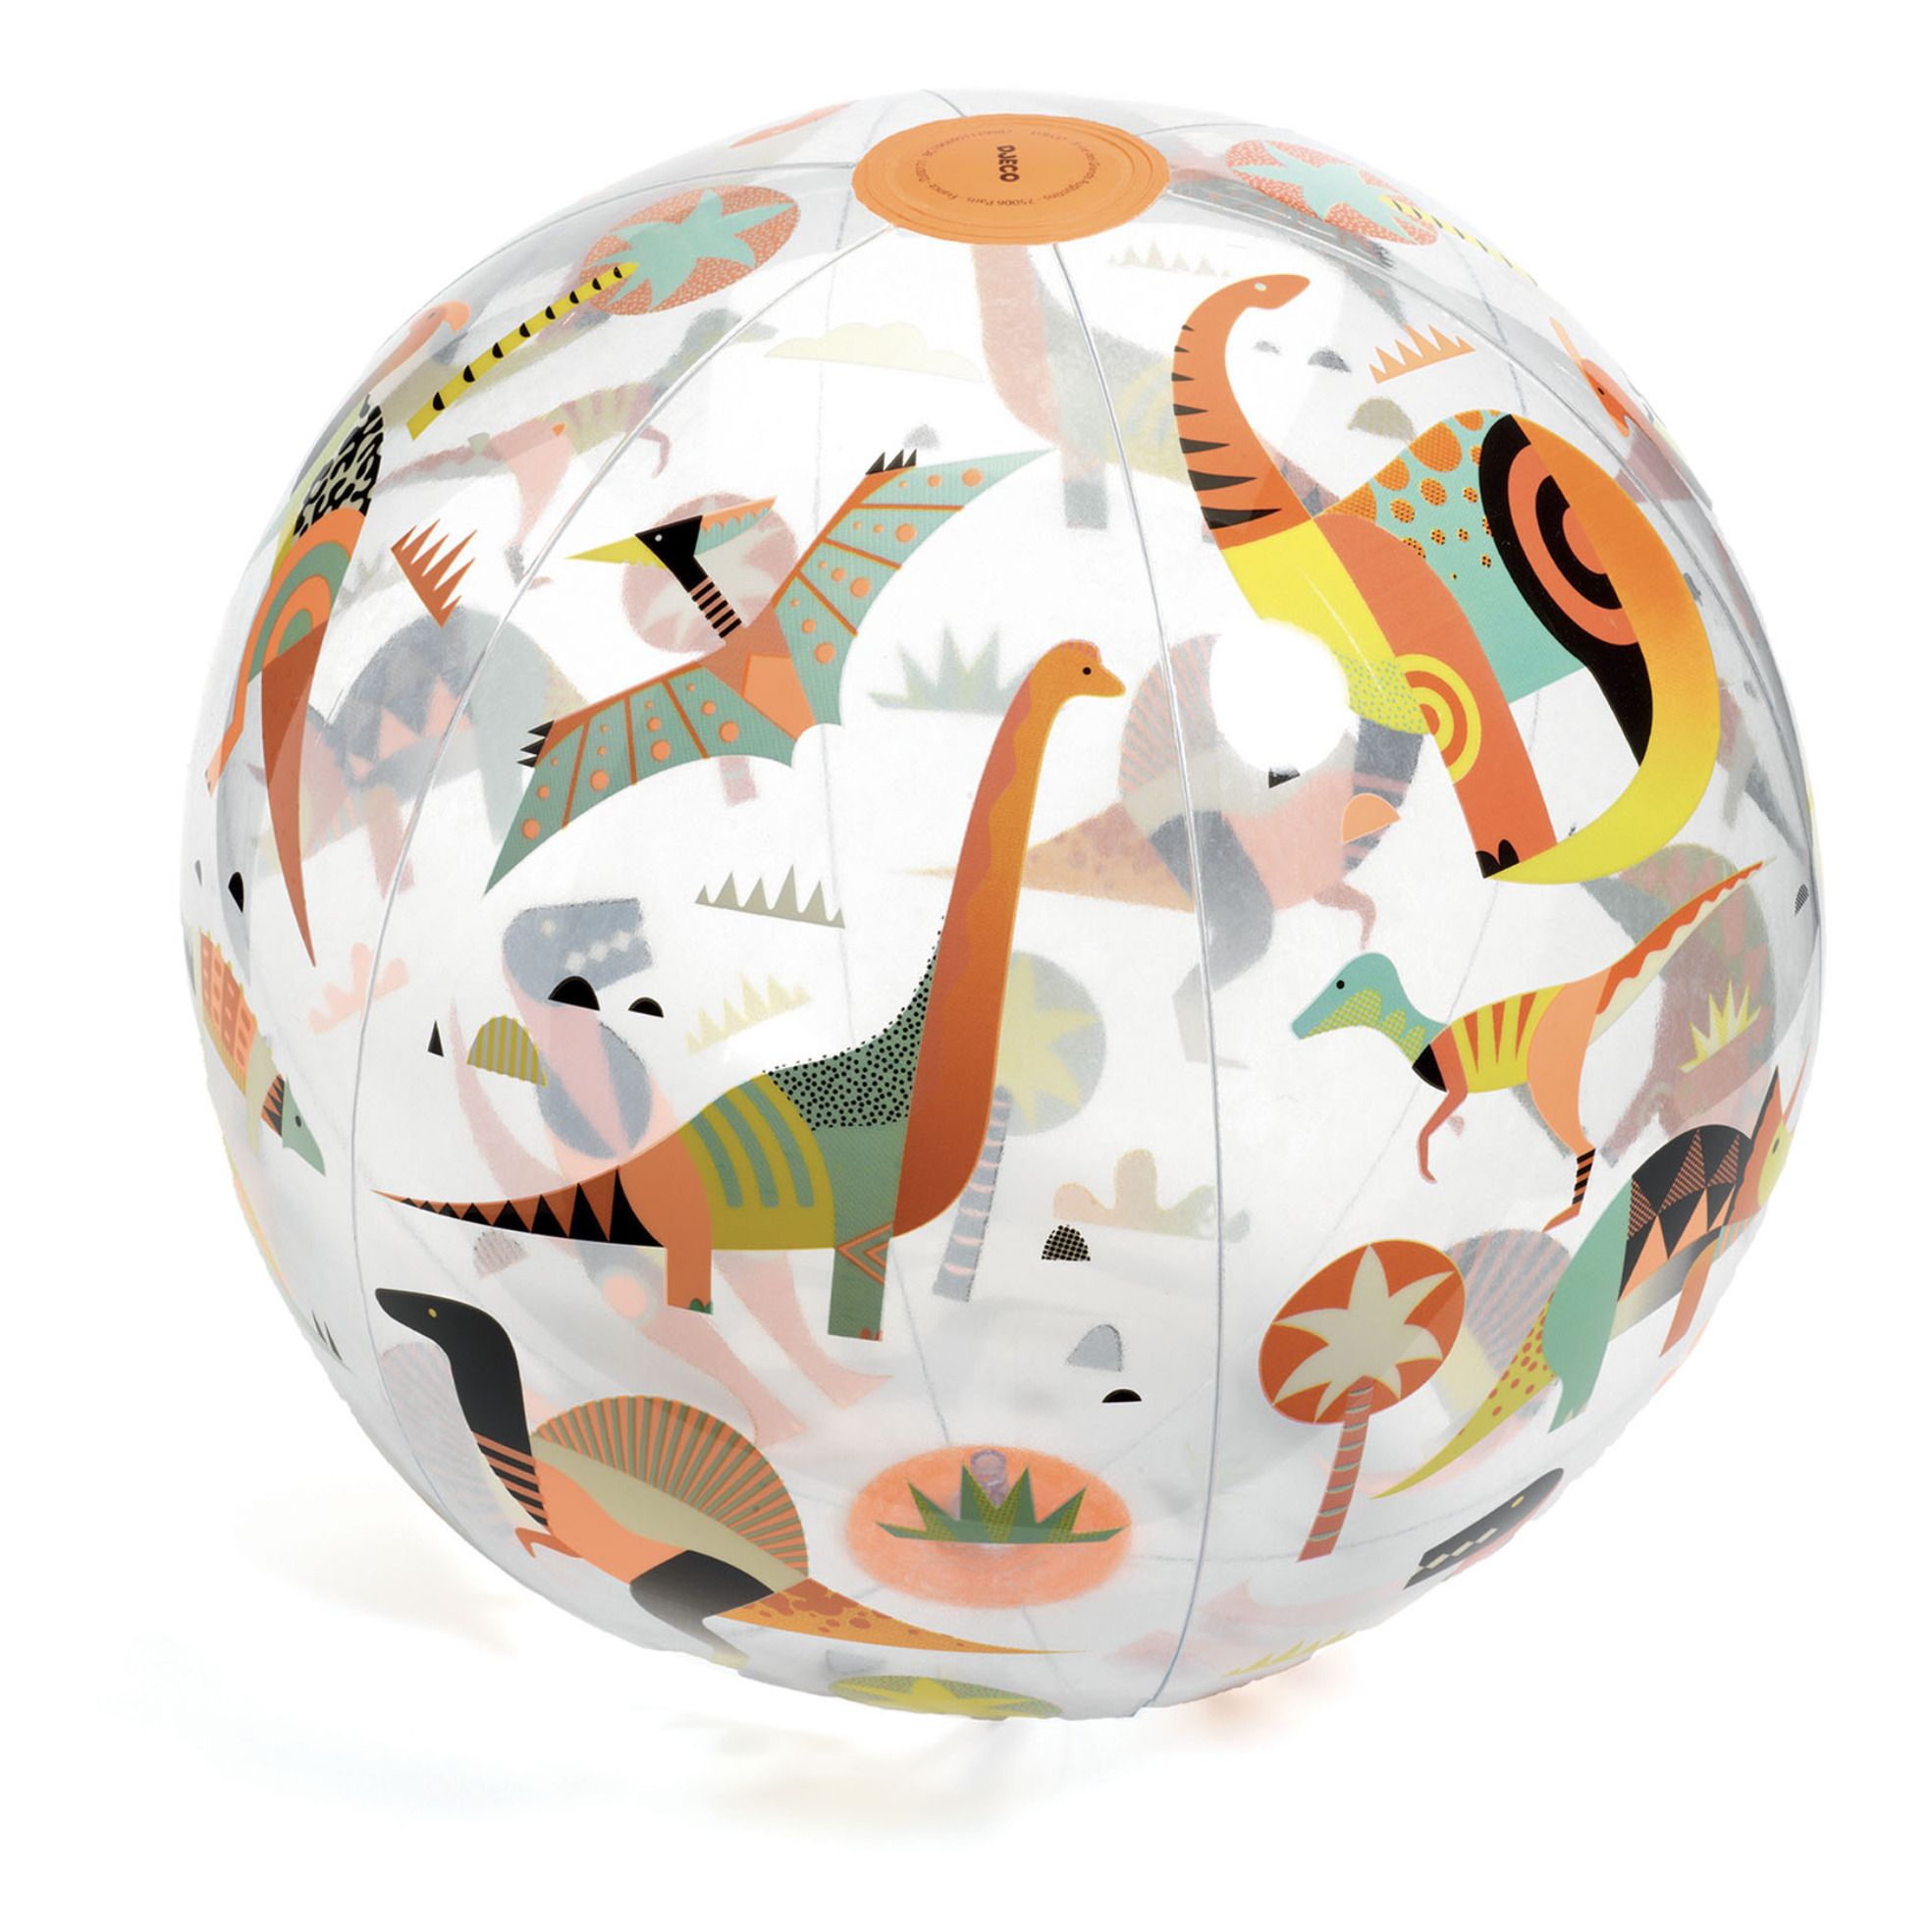 Djeco - Ballon gonflable Dino - Multicolore